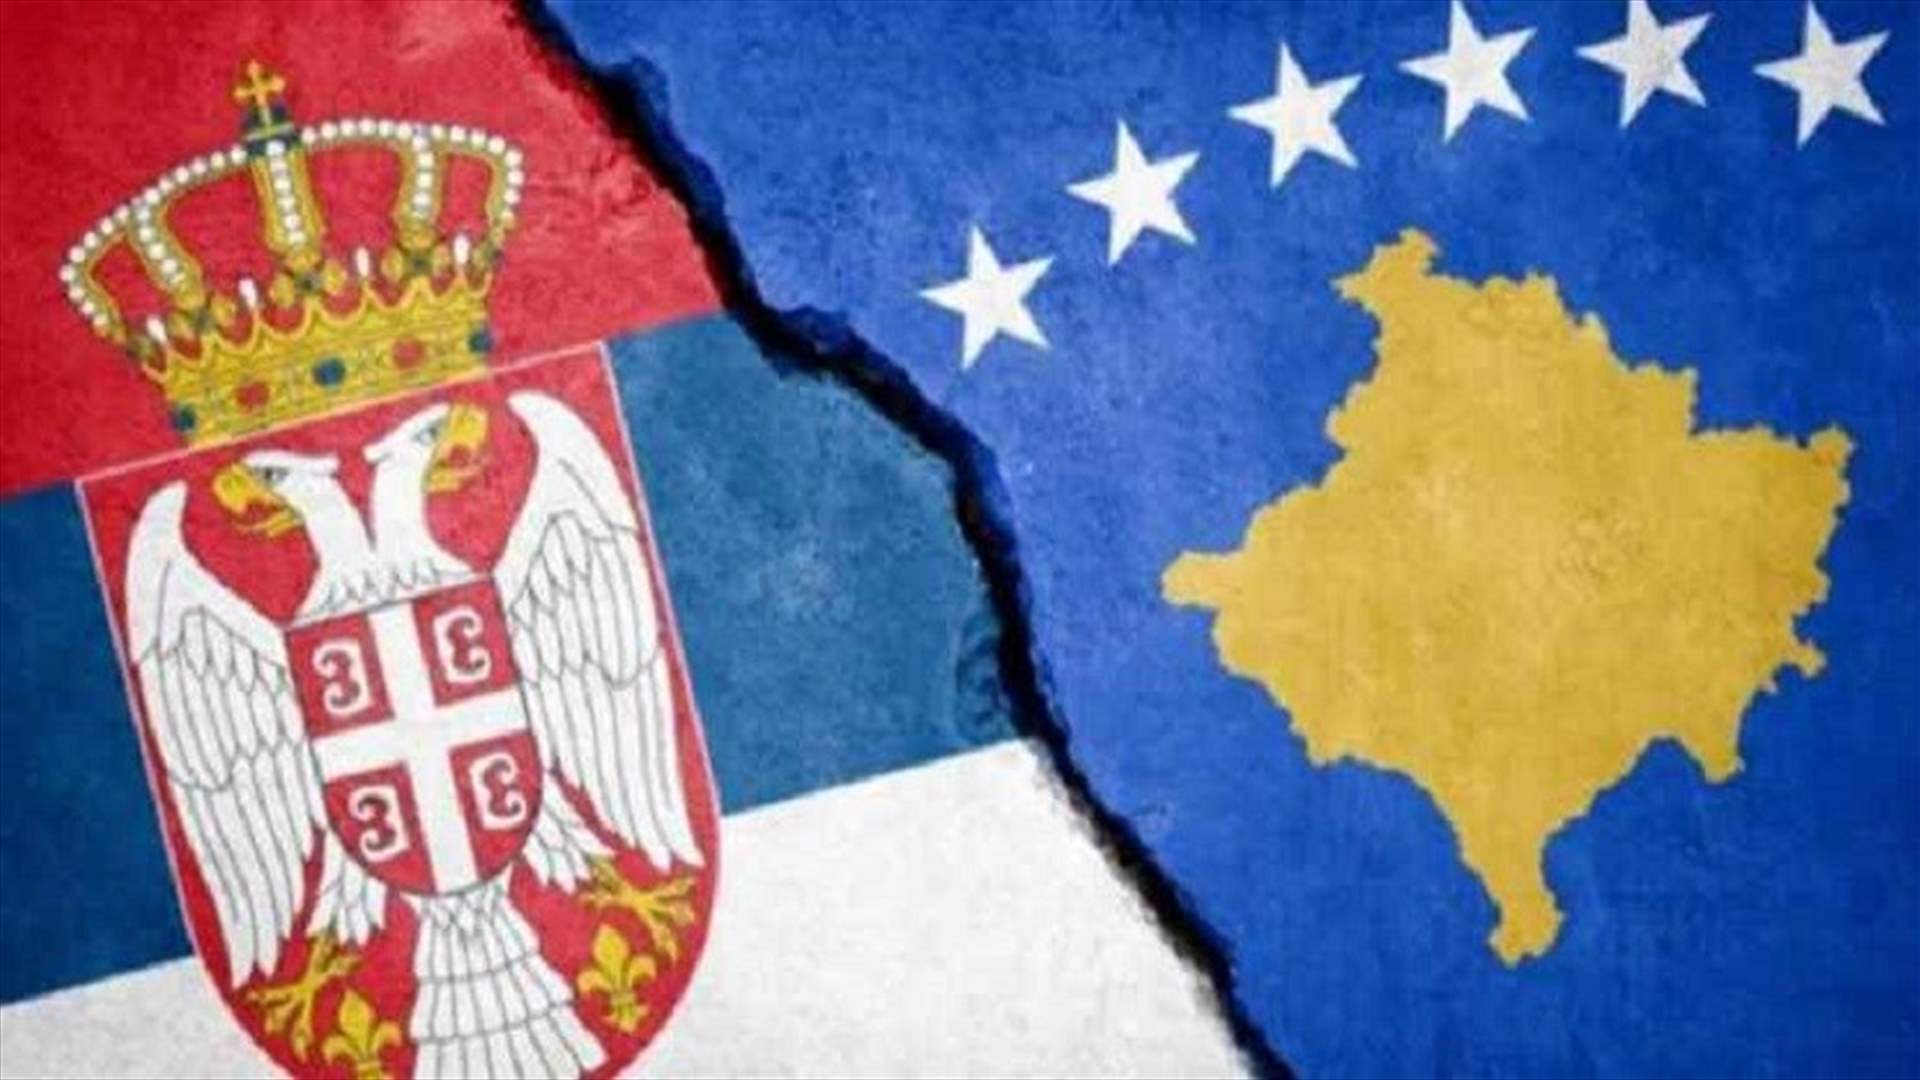 صربيا وكوسوفو تفشلان في توقيع اتفاق لتطبيع علاقاتهما